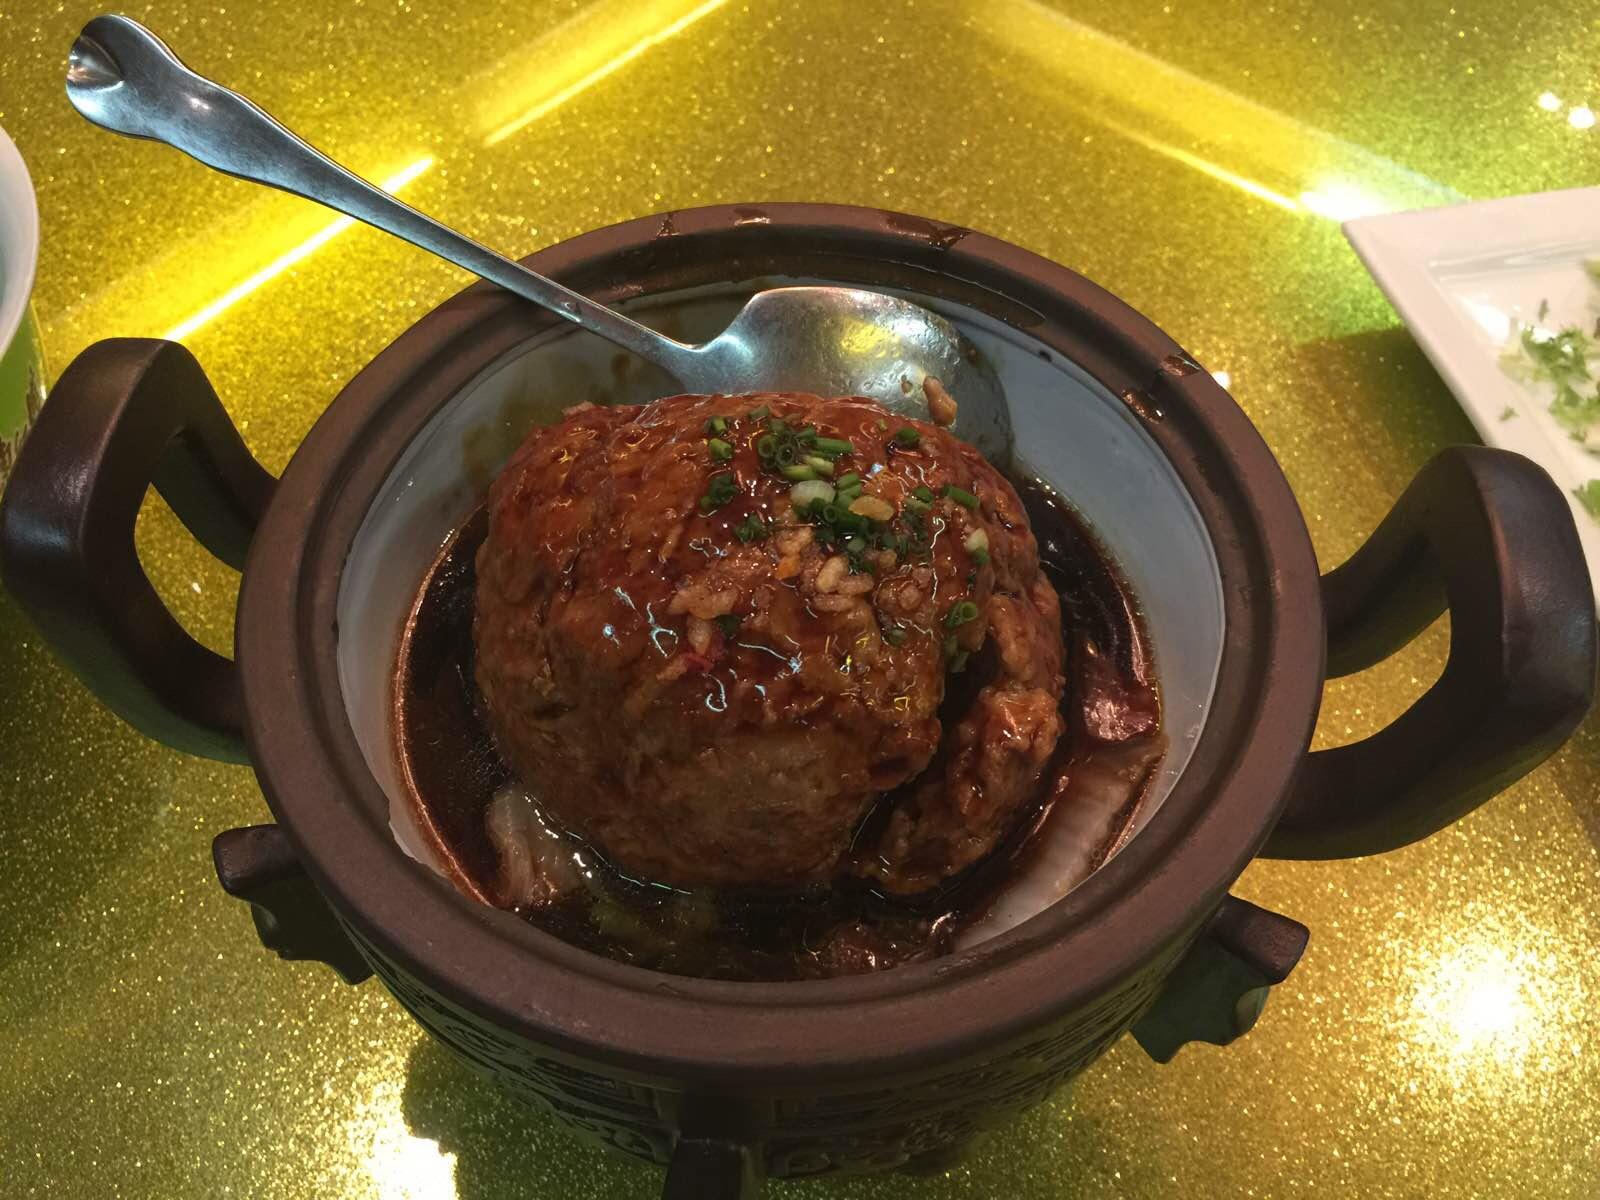 今晚品尝的是扬州特色菜 狮子楼的菜肴让人赞不绝口!